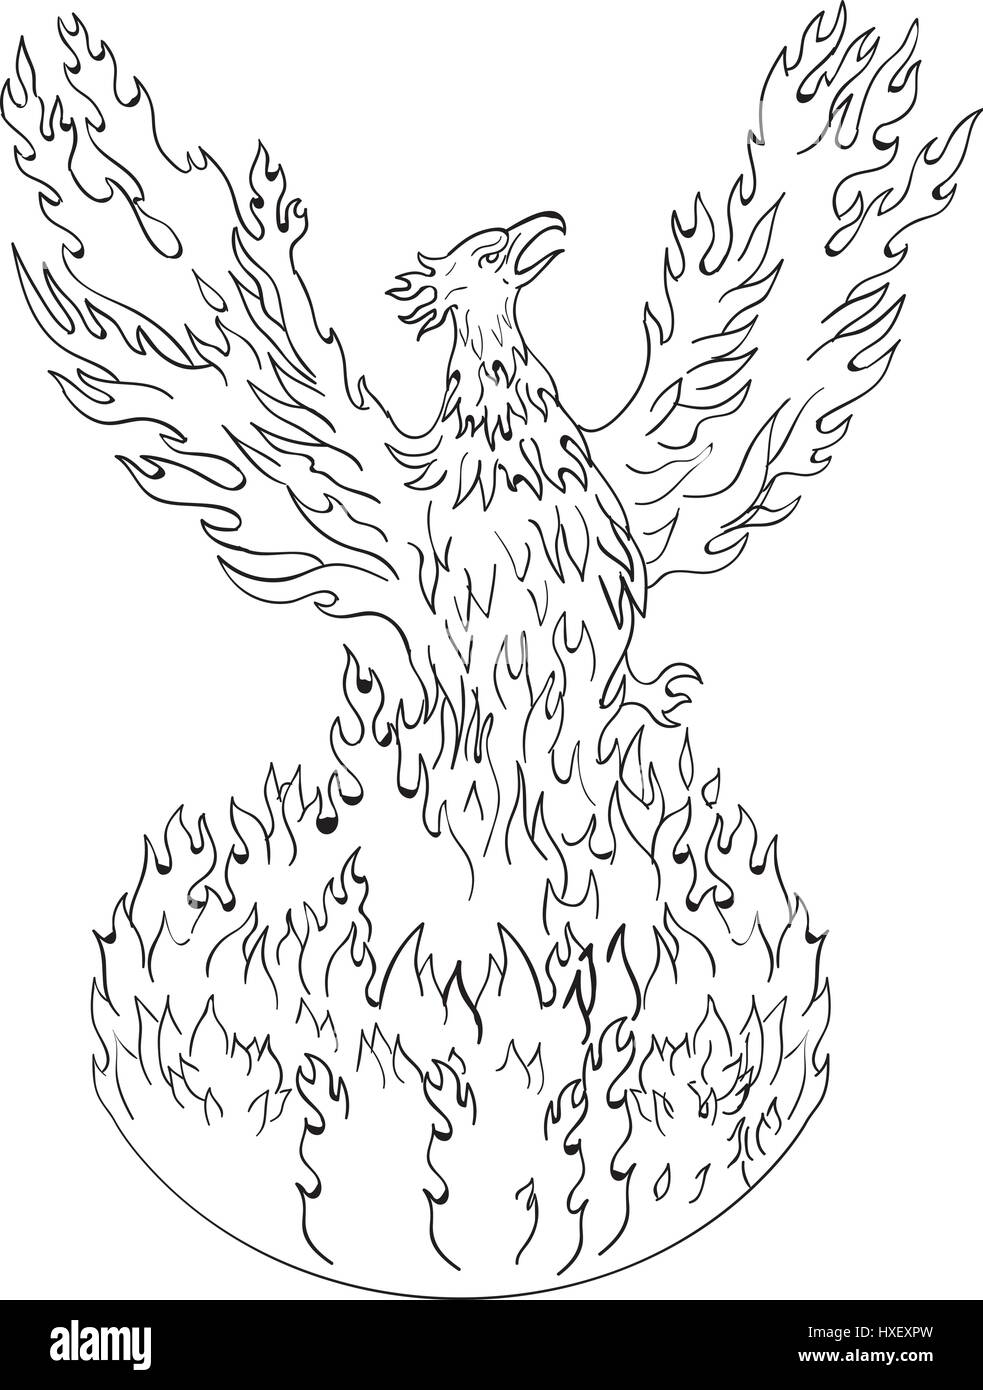 Zeichnung Skizze Stil Abbildung eines Phönix erhebt sich aus feurigen Flammen, stellen Flügel angehoben für Flug getan in schwarz und weiß auf isolierte weiße Rückseite Stock Vektor